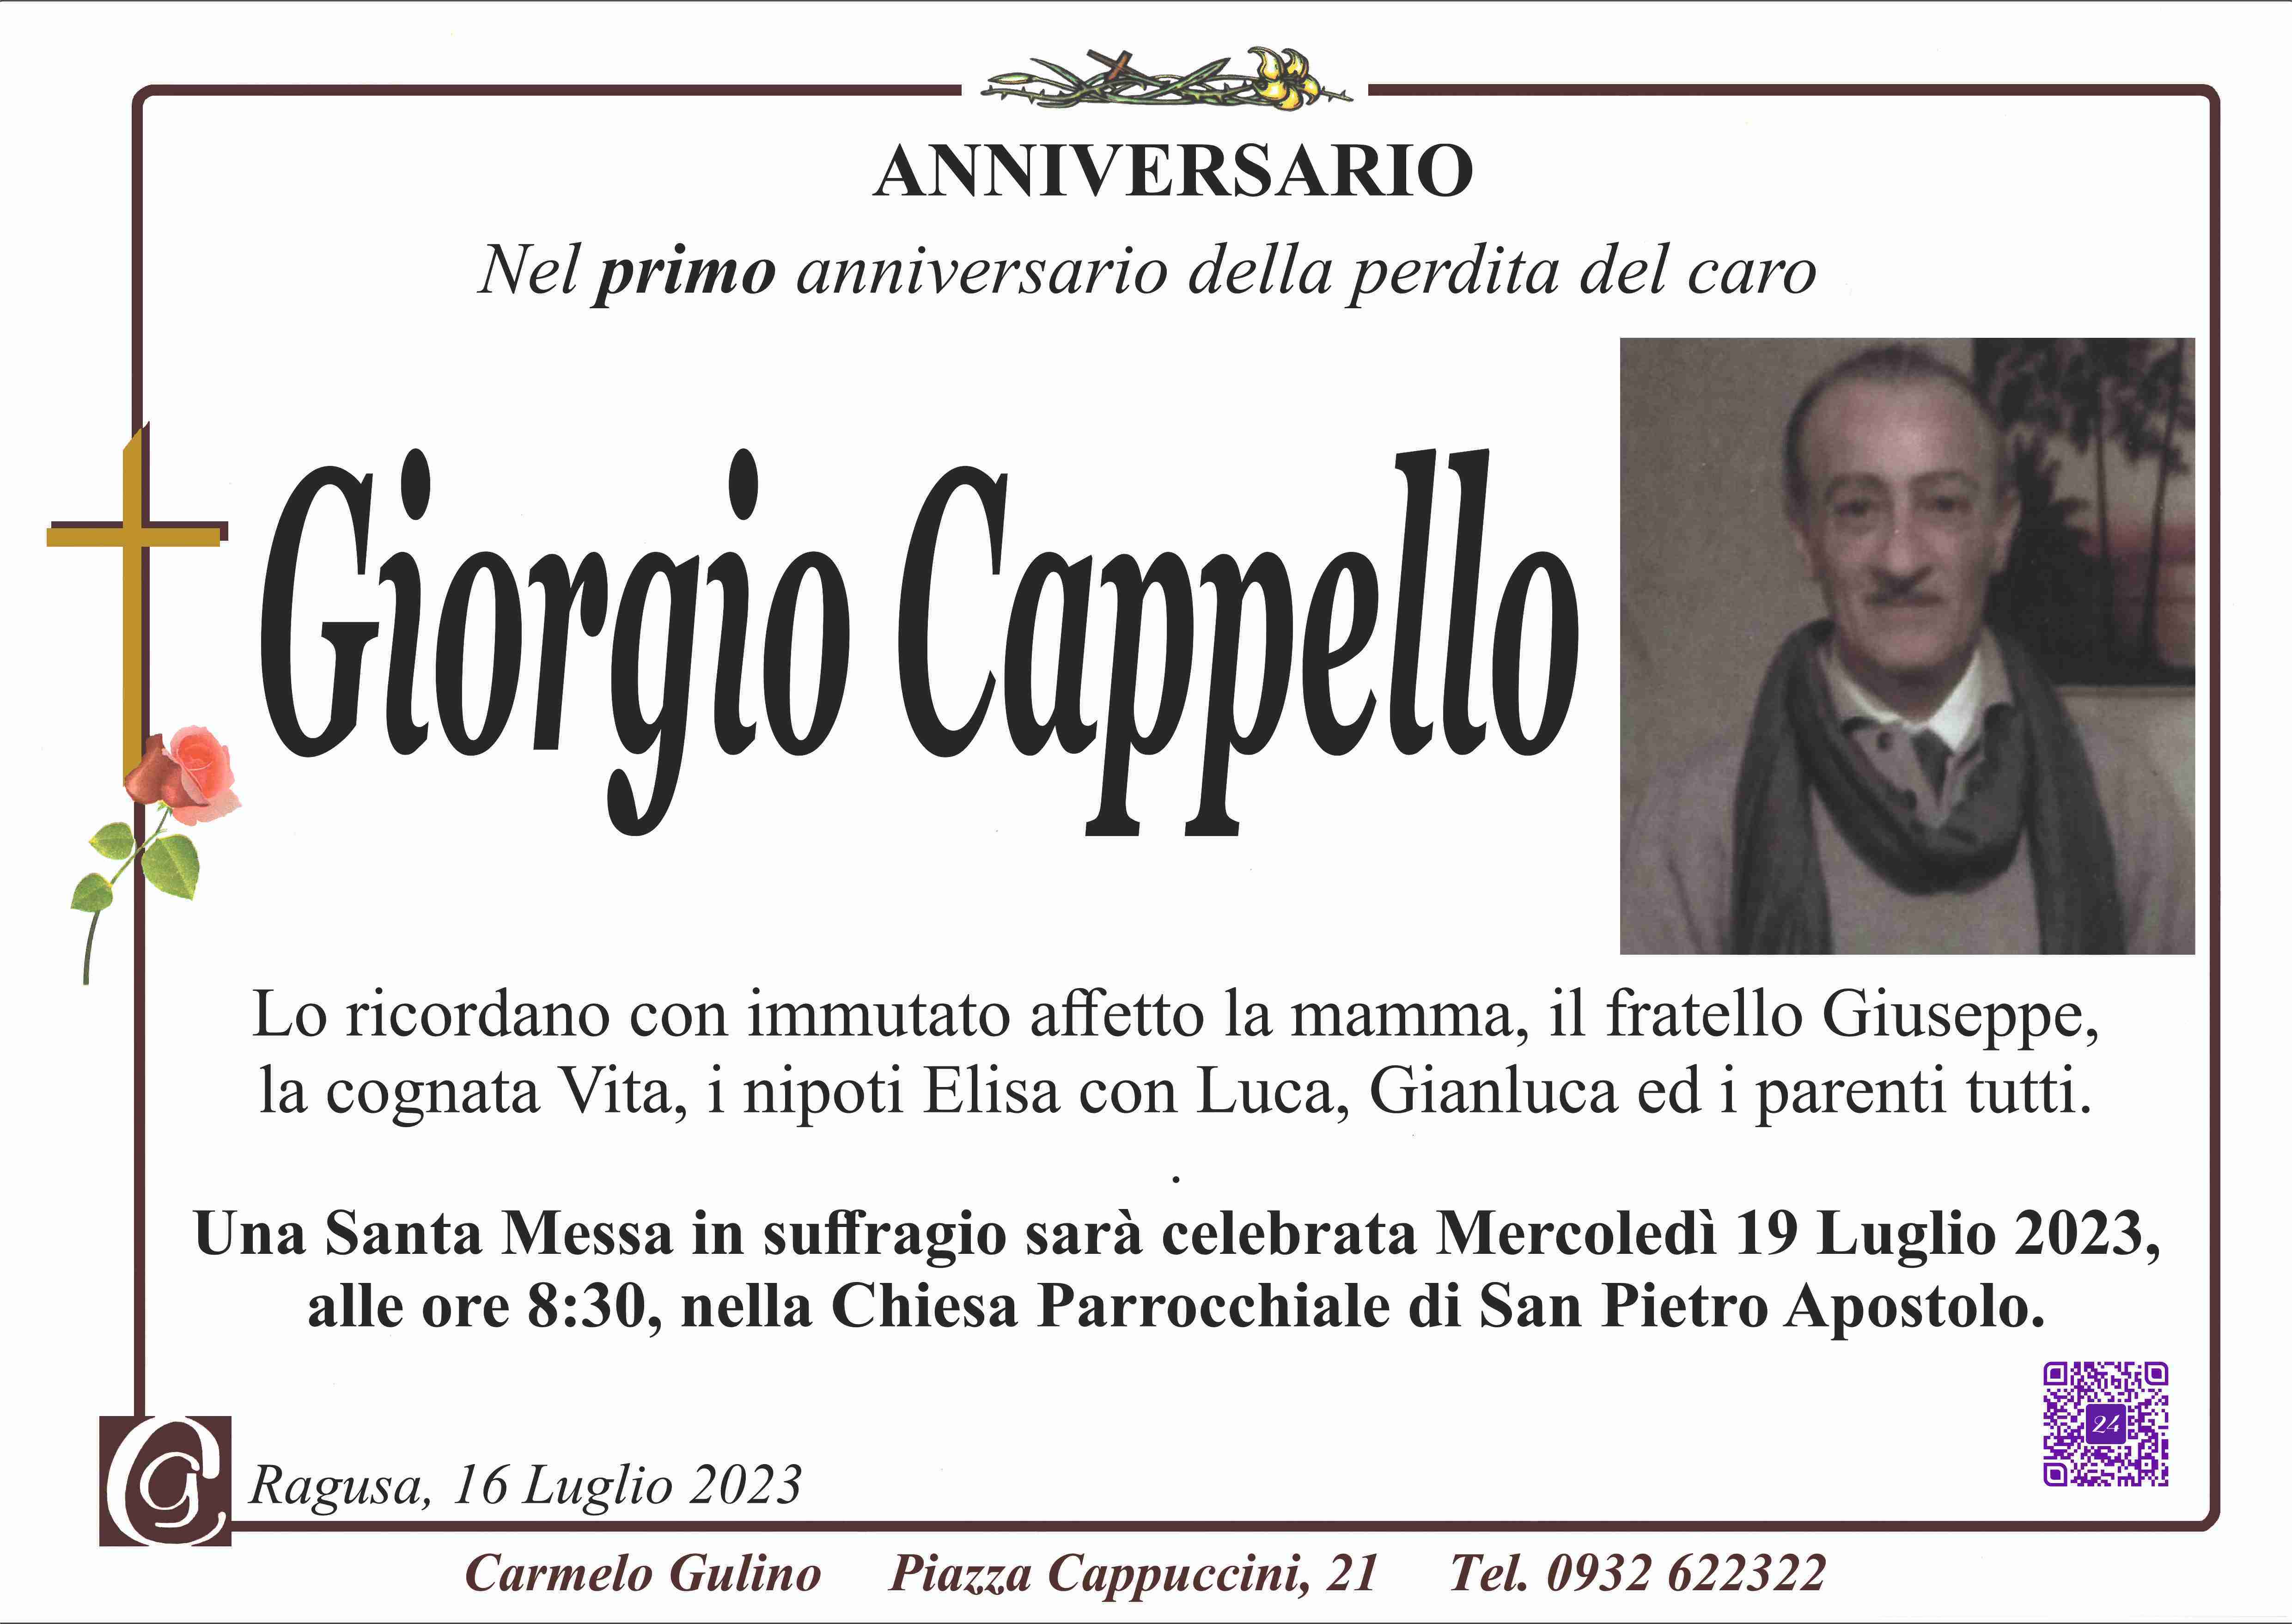 Giorgio Cappello